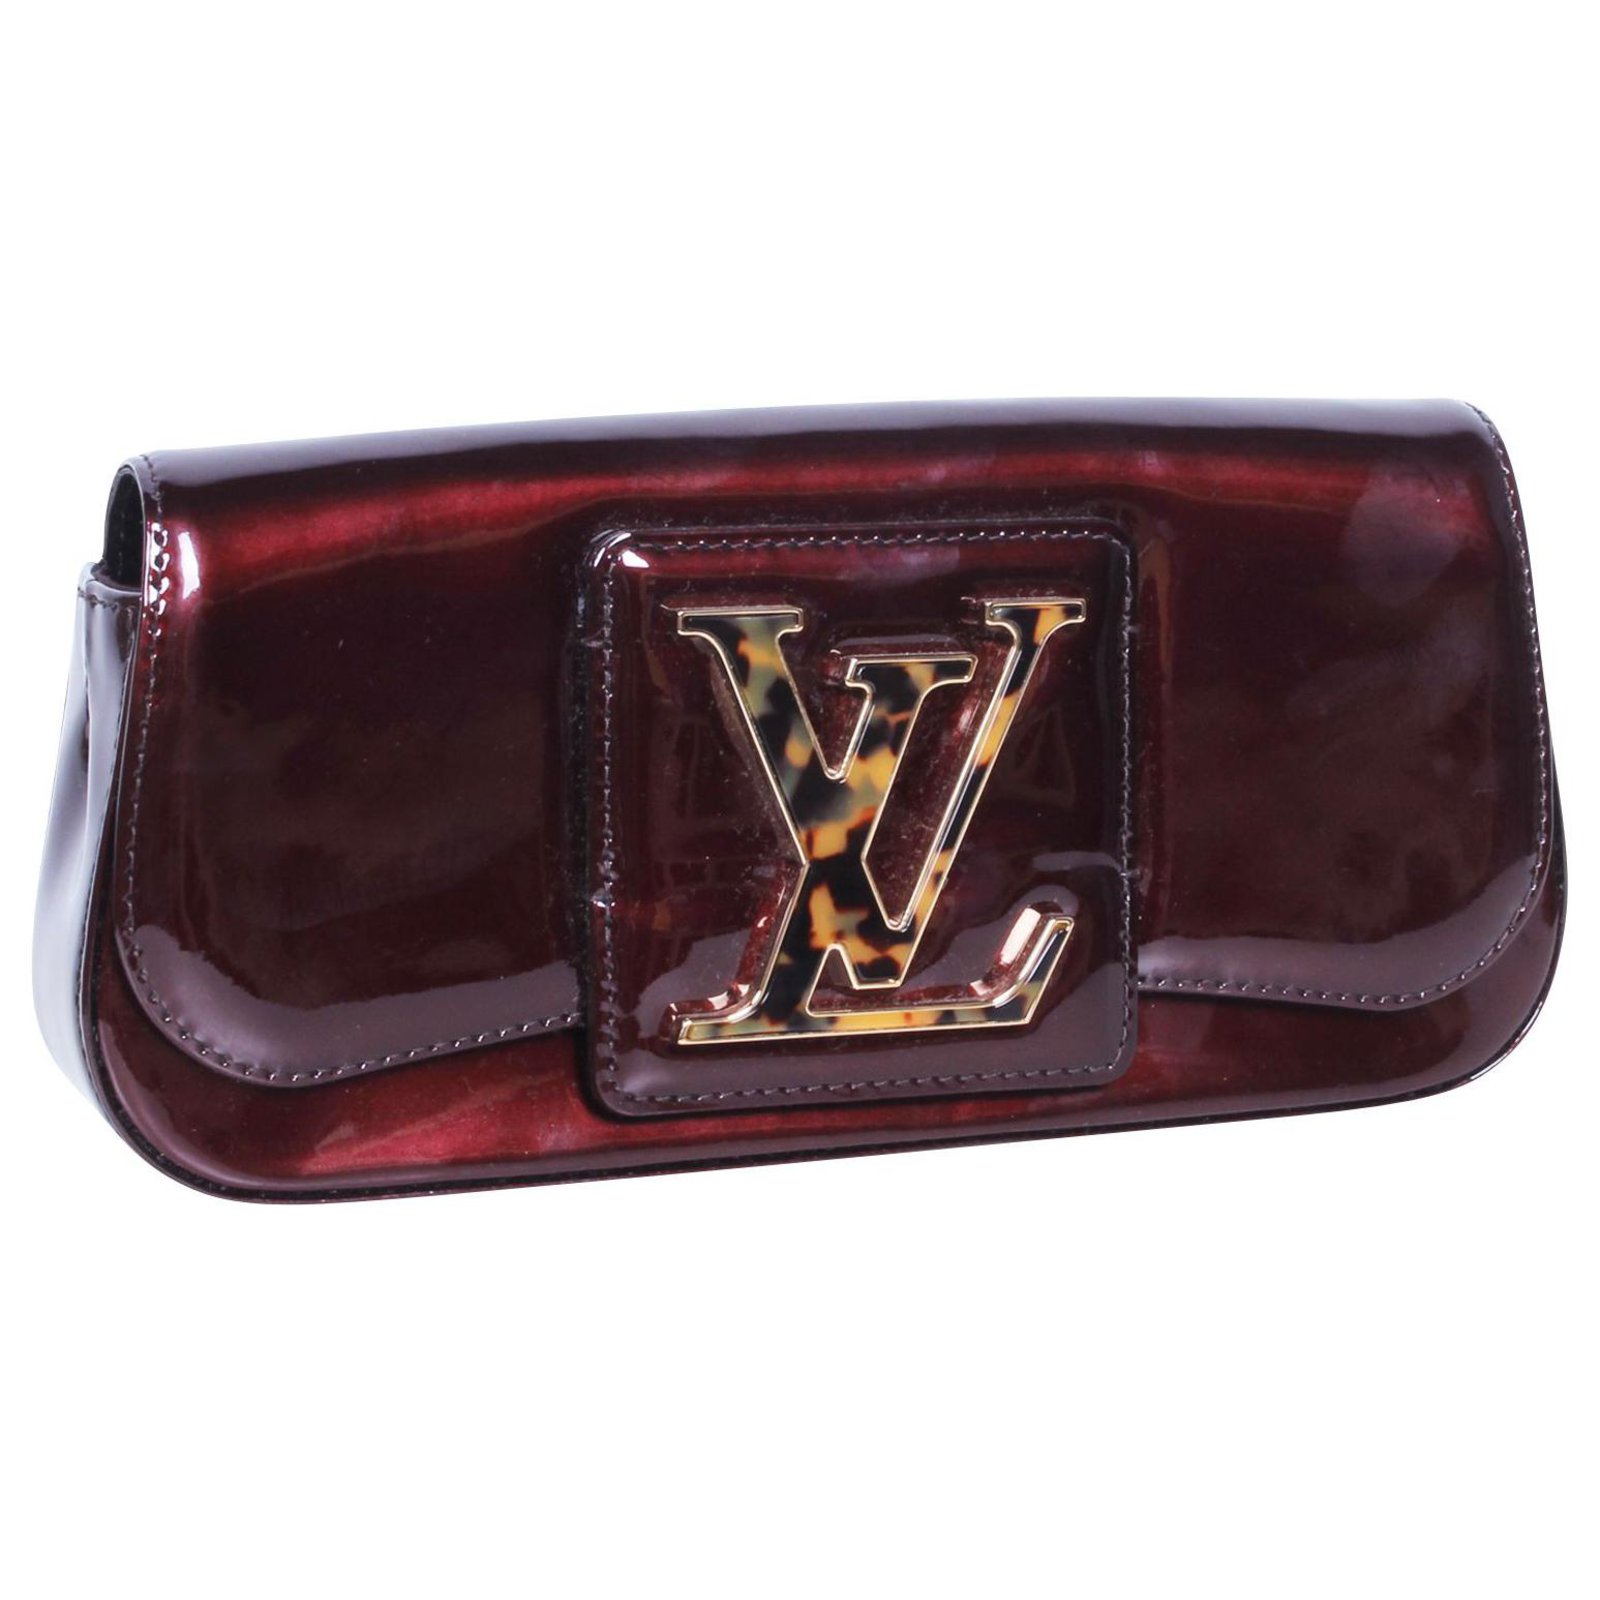 Louis Vuitton Sobe Clutch Patent Leather Bordeaux